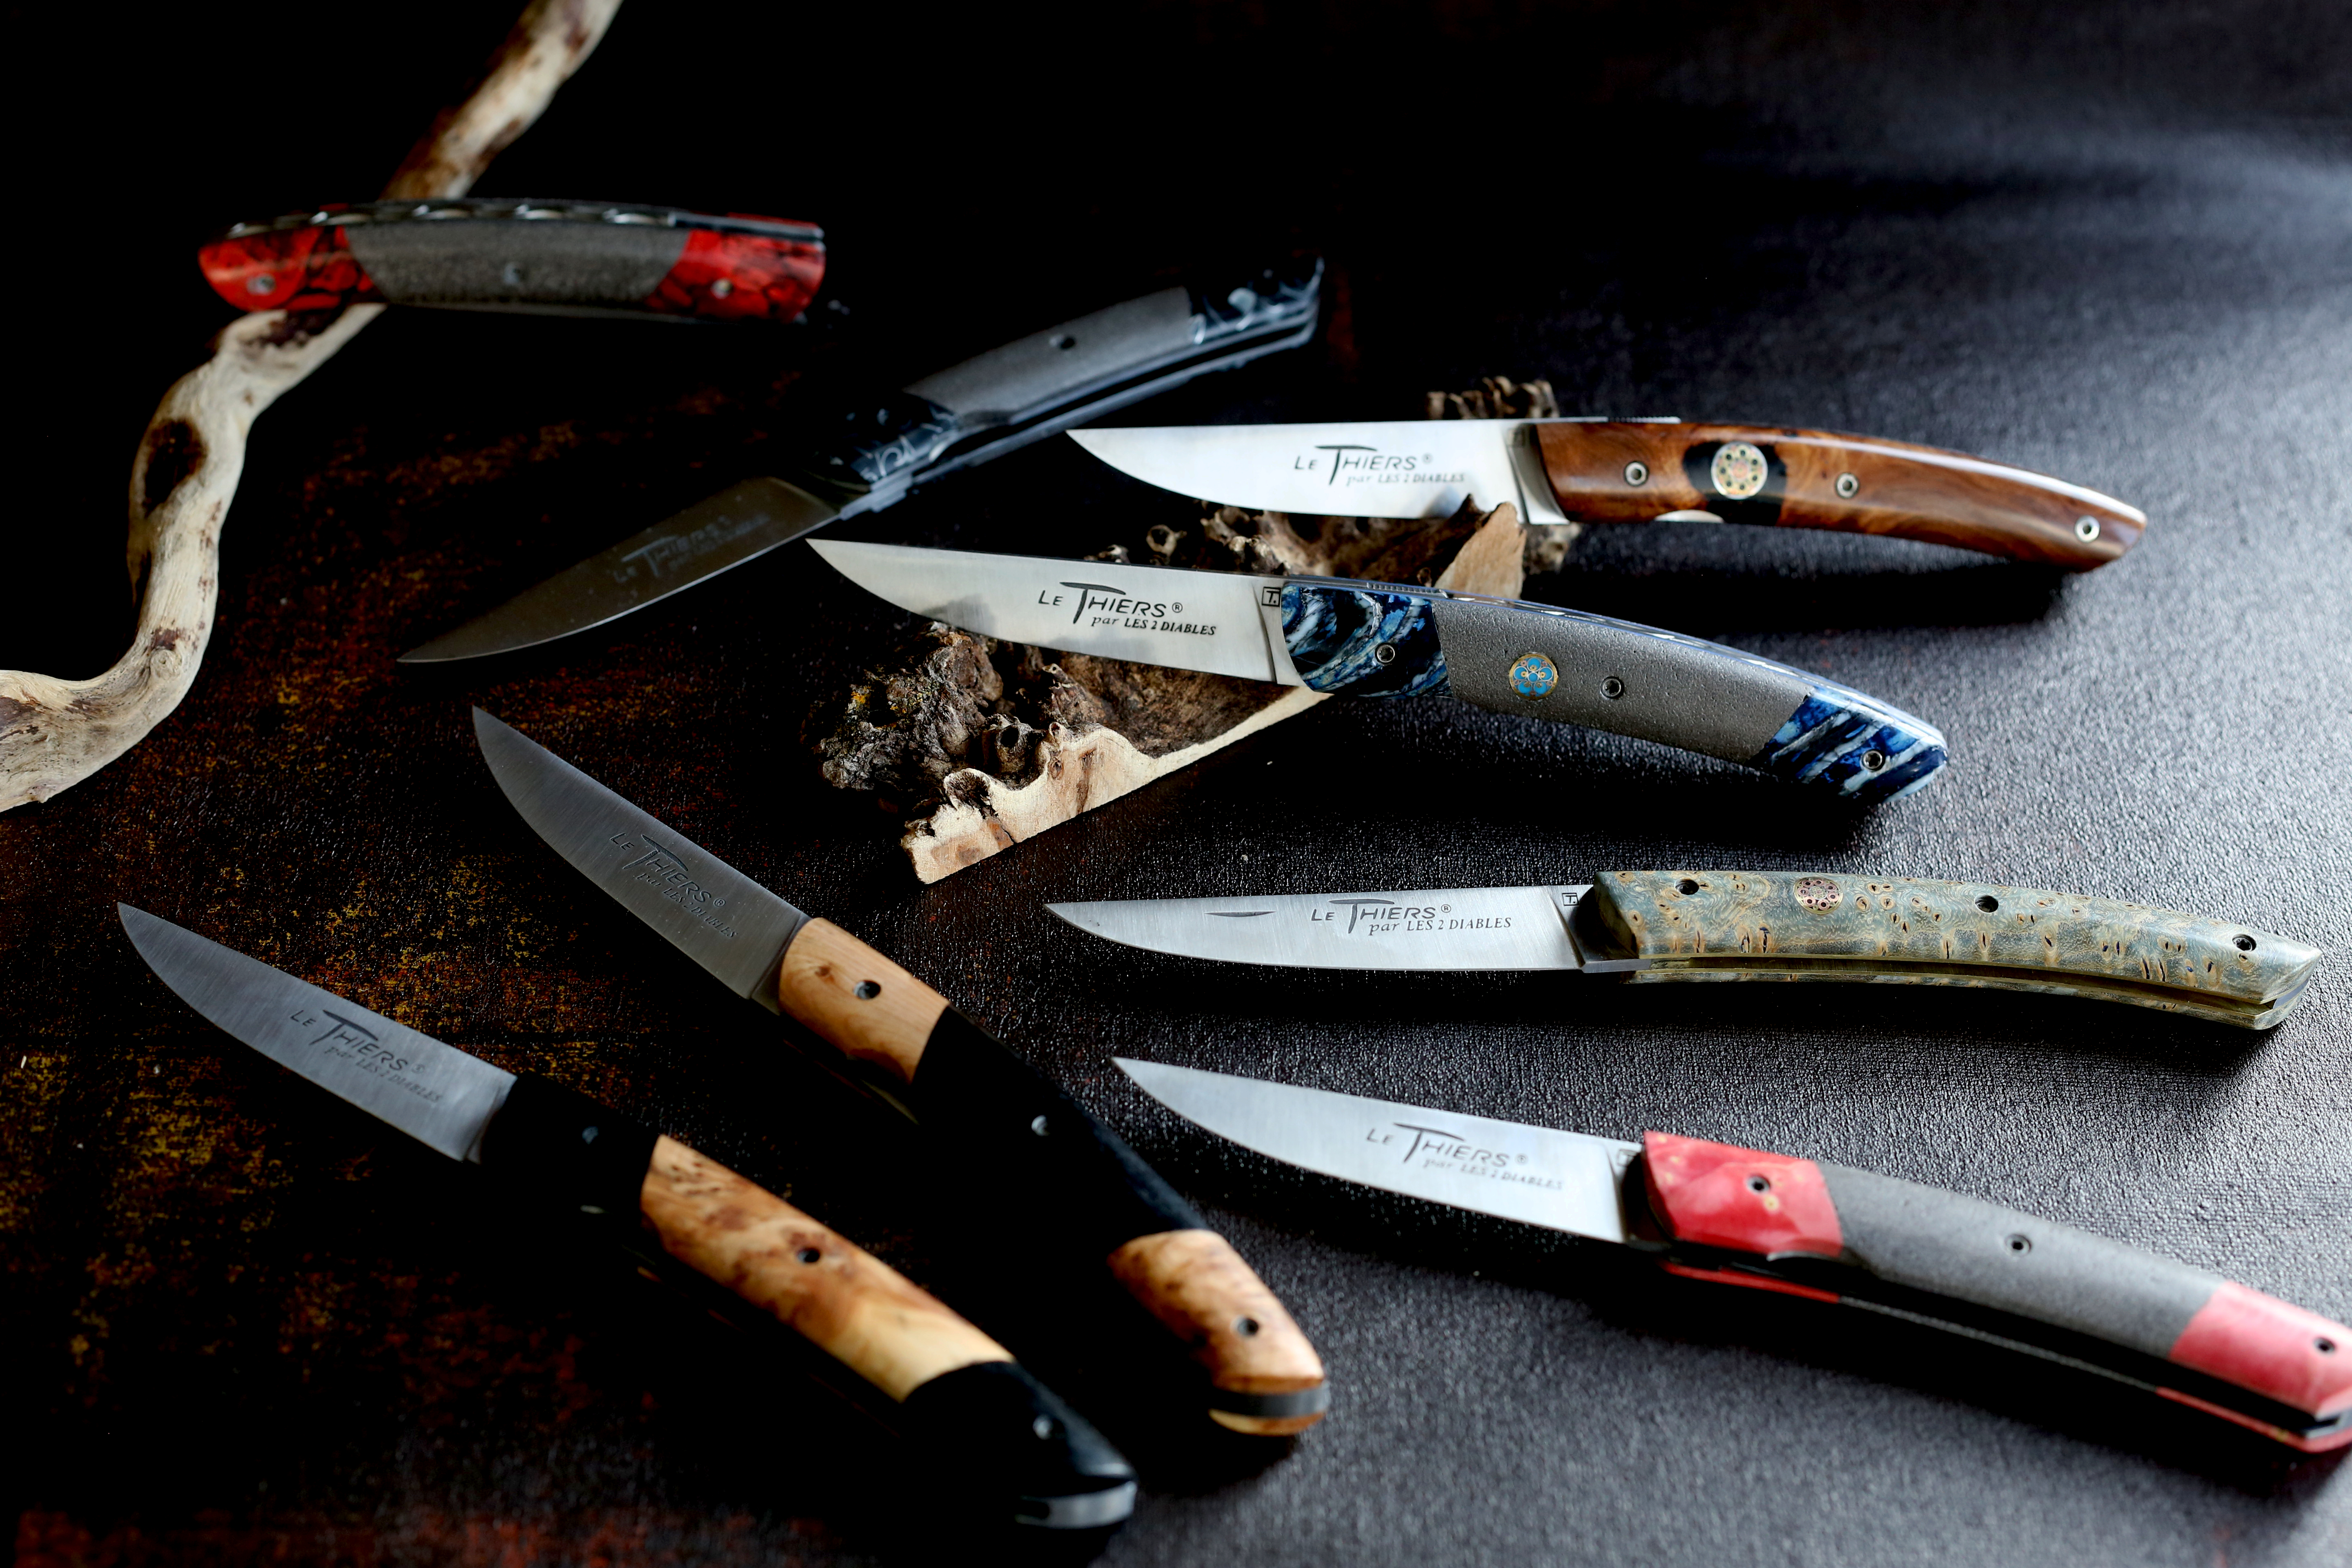 Vente couteaux Chabreloche, Vente couteaux Thiers, Vente couteaux Puy-de-Dôme (63)